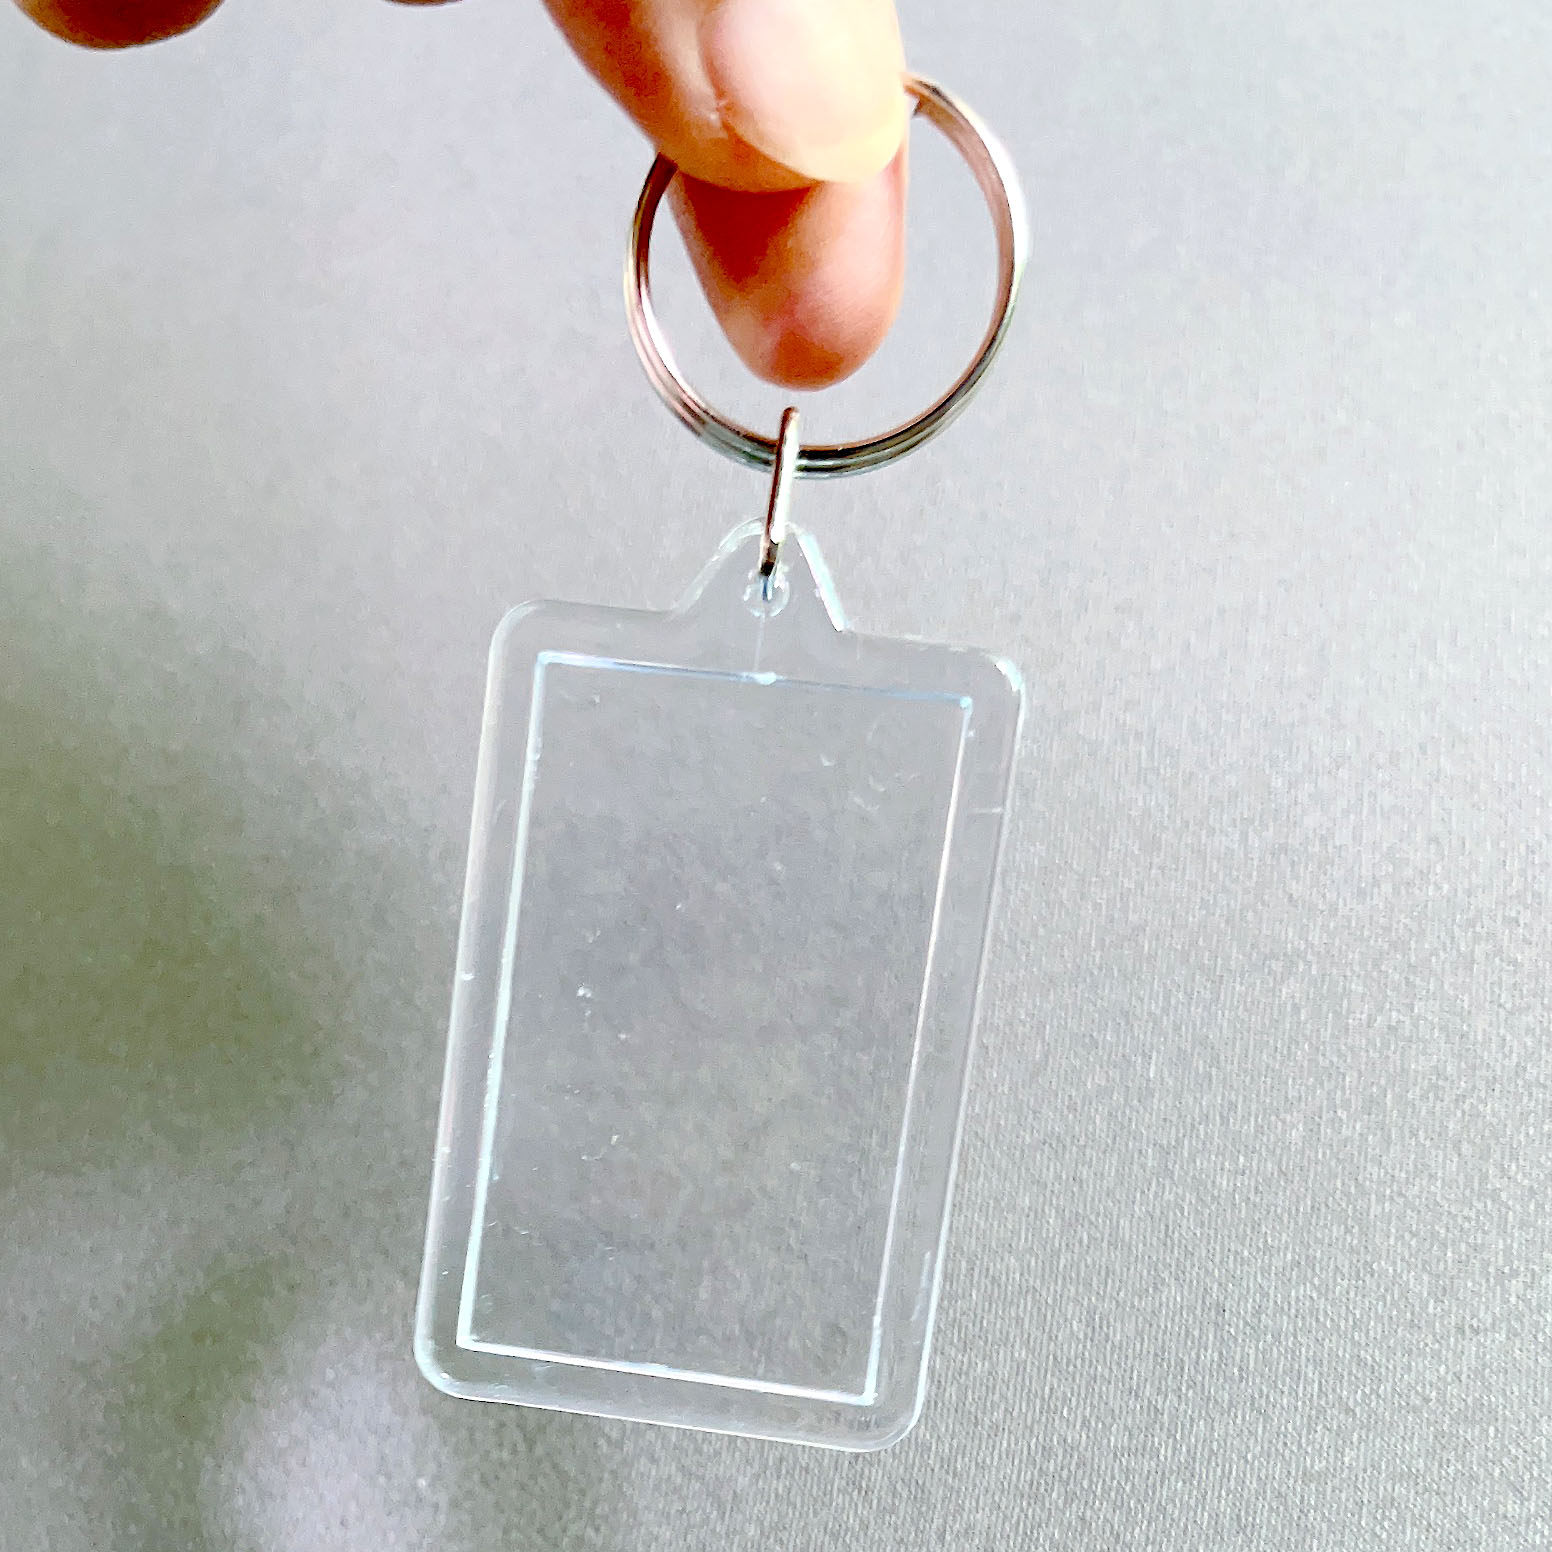 克亚力透明钥匙扣照片贴纸收藏保护壳创意DIY小挂件可放一寸照片 - 图2